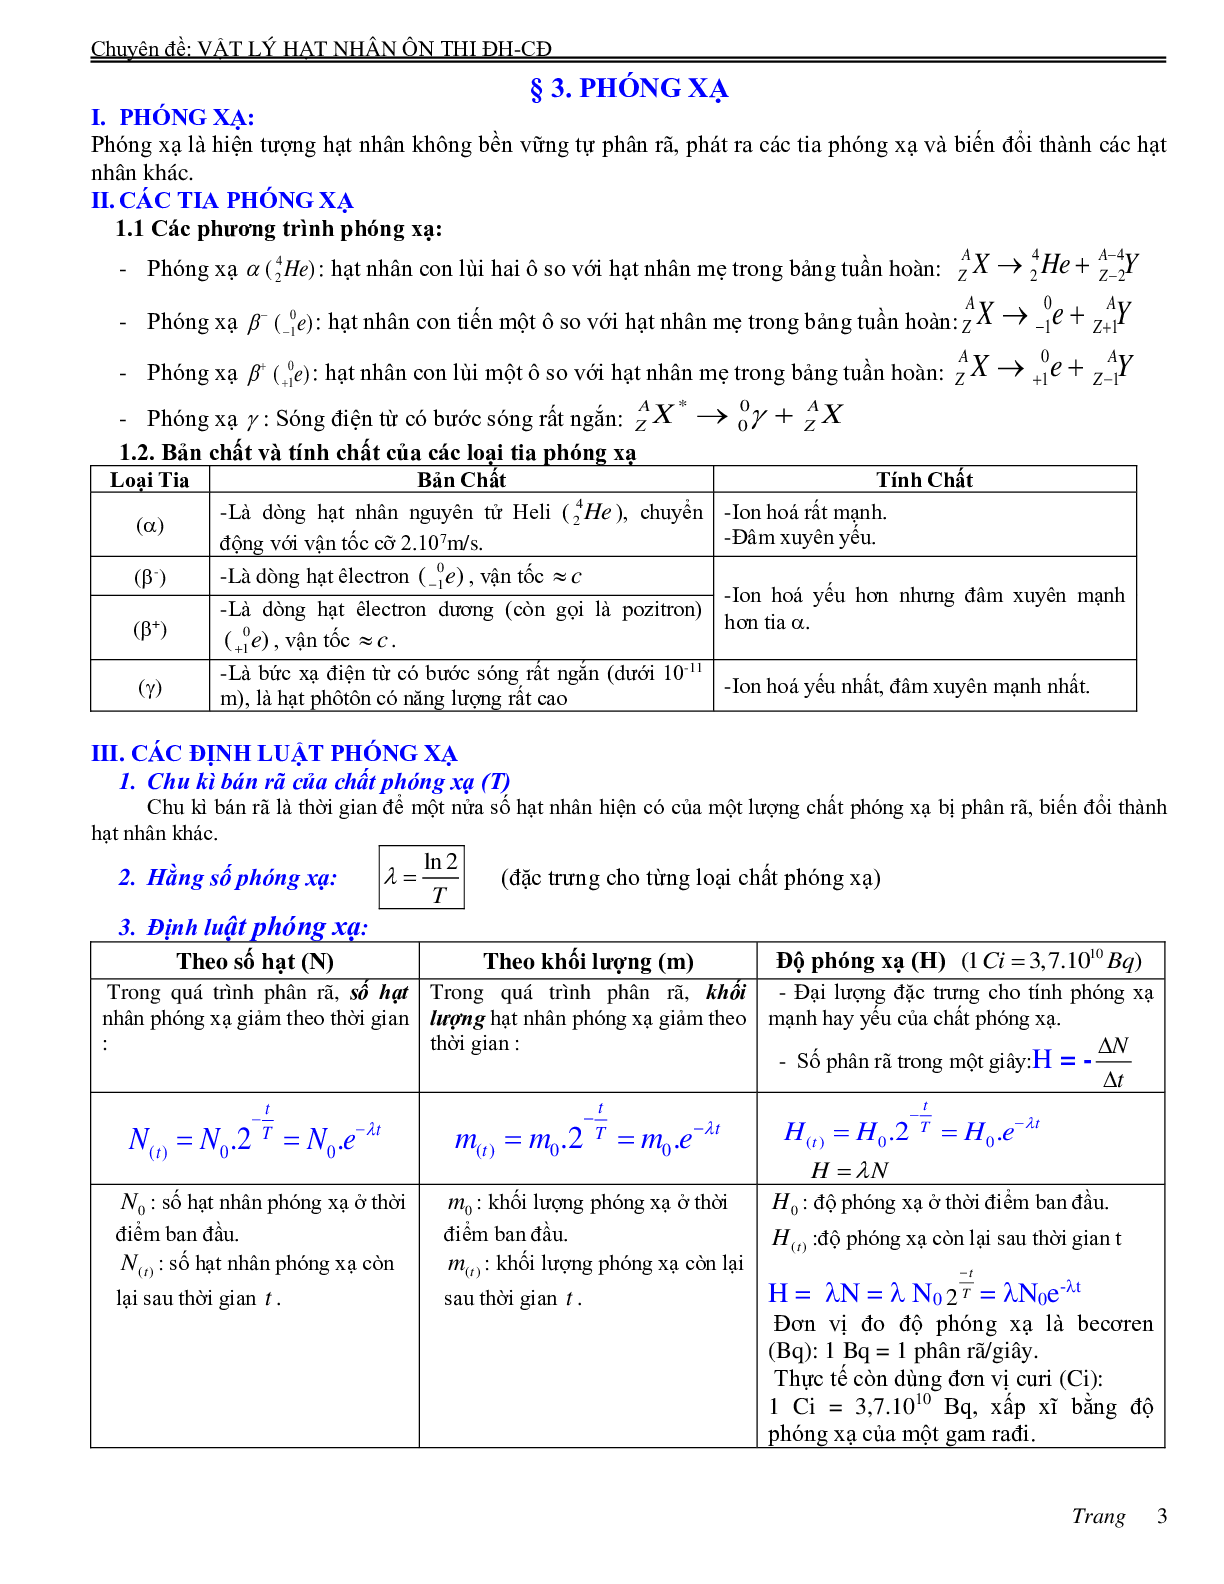 Chuyên đề Hạt nhân nguyên tử môn Vật lý lớp 12 (trang 3)